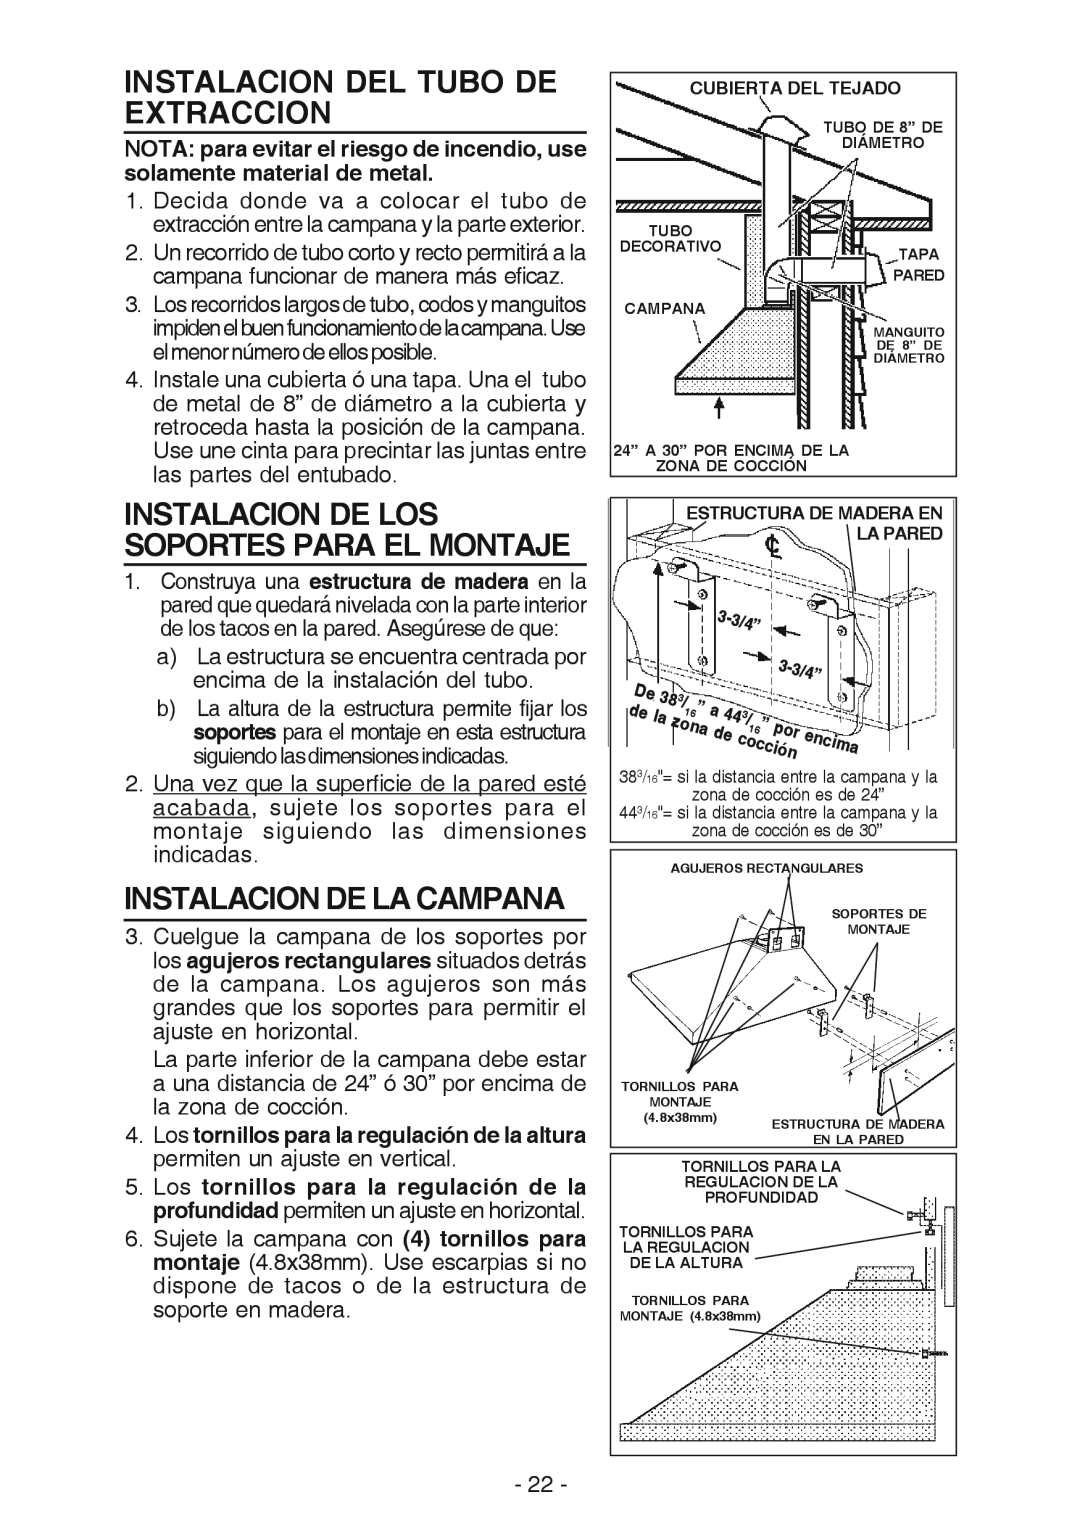 Best K42 manual Instalacion Del Tubo De Extraccion, Instalacion De La Campana, Instalacion De Los Soportes Para El Montaje 